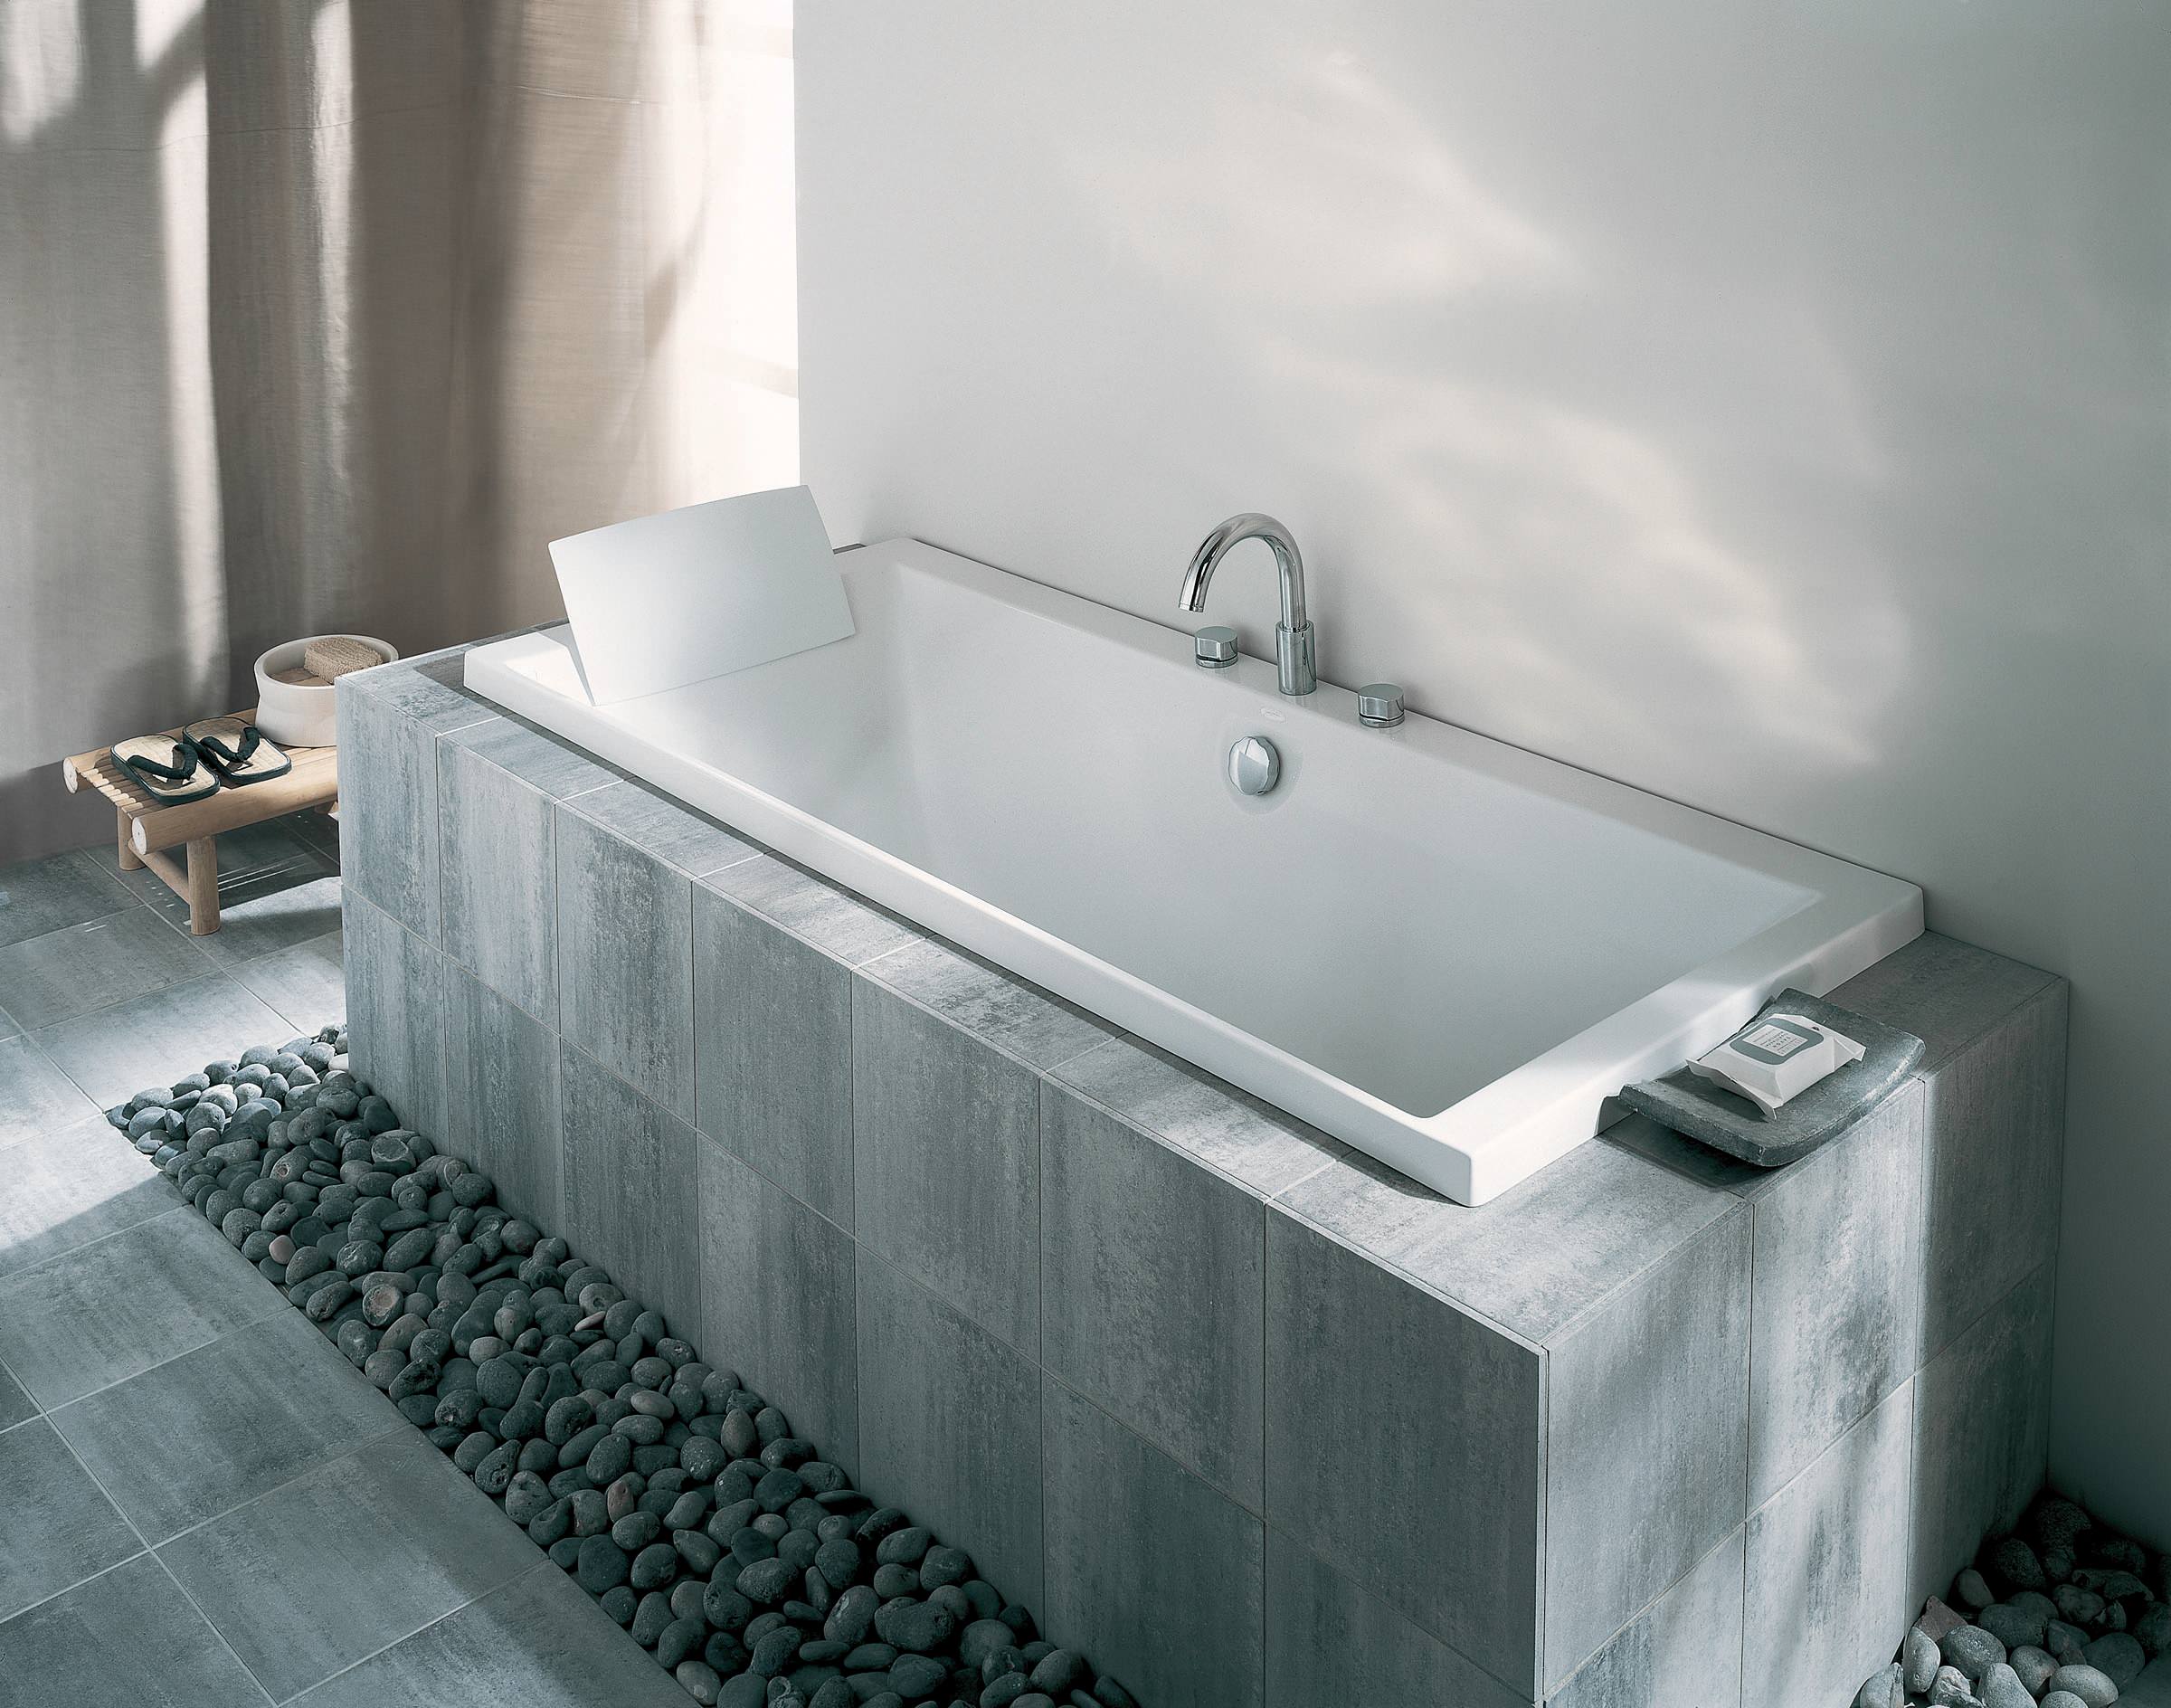 Baignoire avec tablier en carreaux de pierre - Contemporary - Bathroom - by Jacob  Delafon Officiel | Houzz